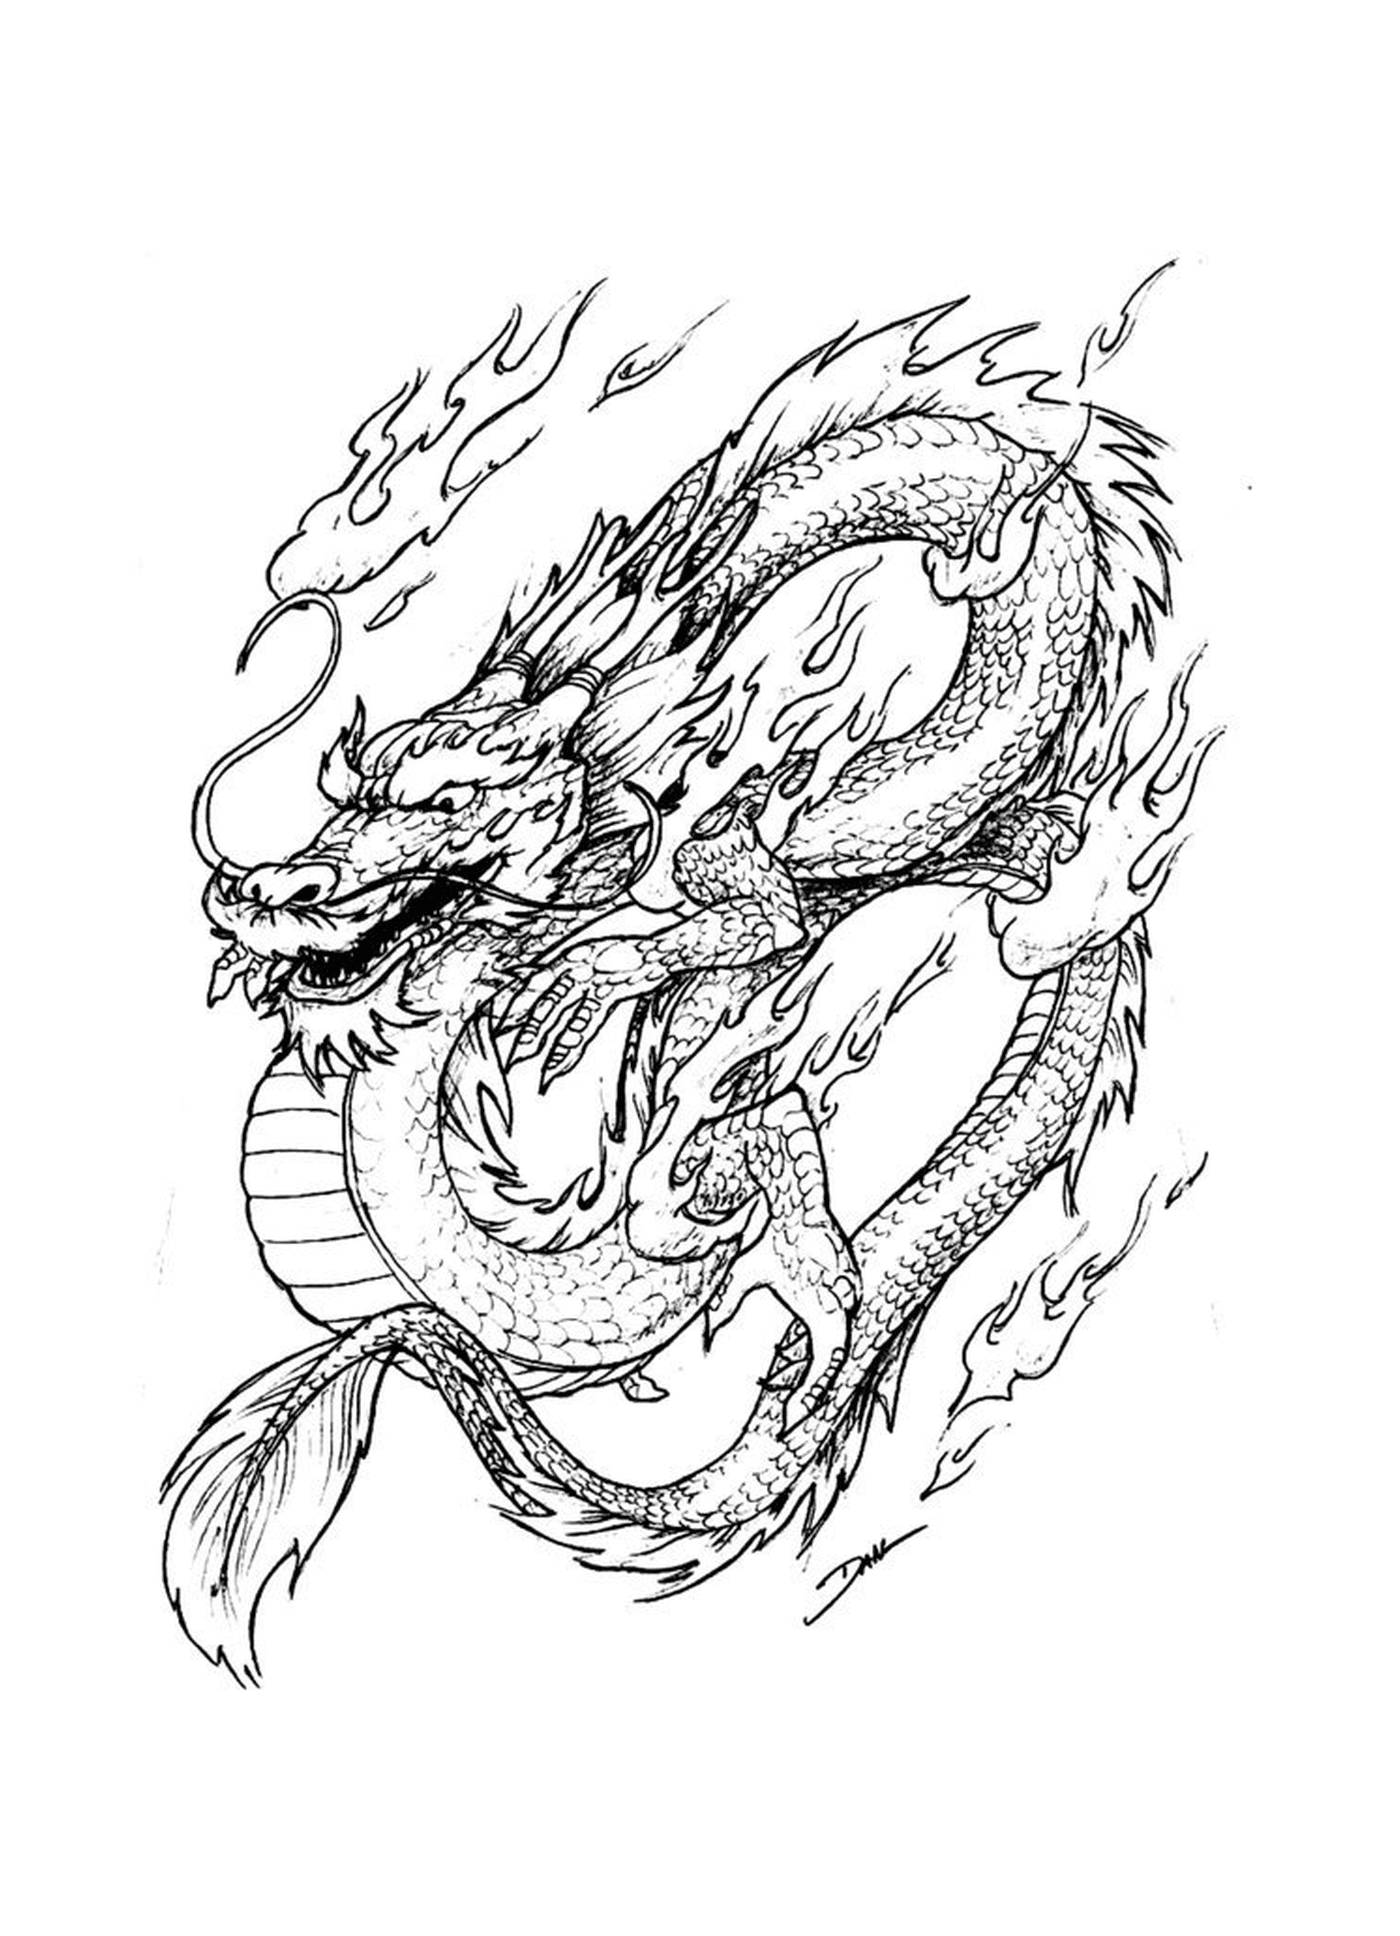  Ориентальный дракон воспламенён, символ силы и страсти 